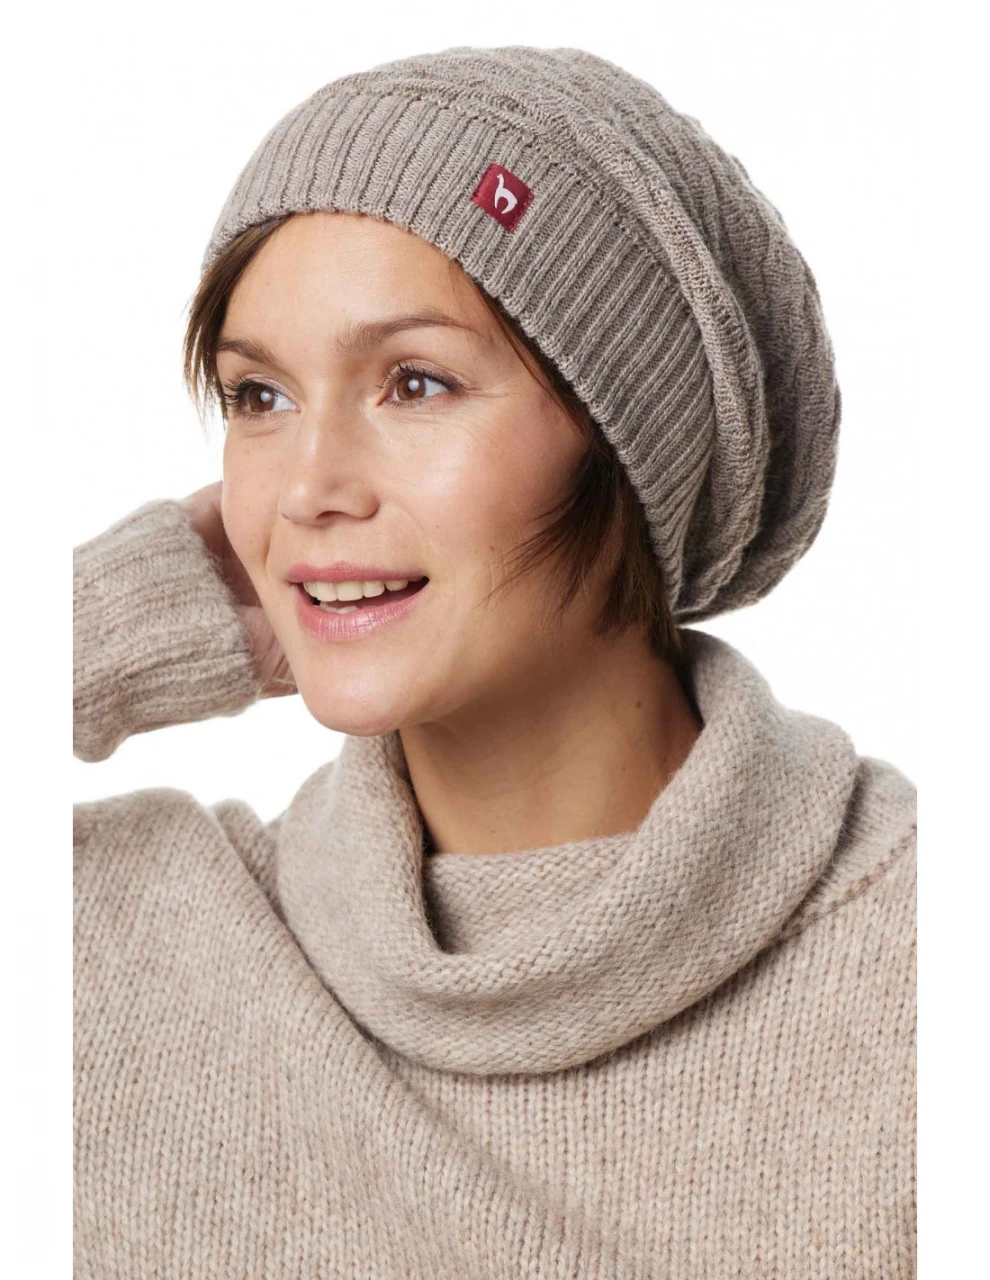 BIESEN hat long women's cap in pure Alpaca wool